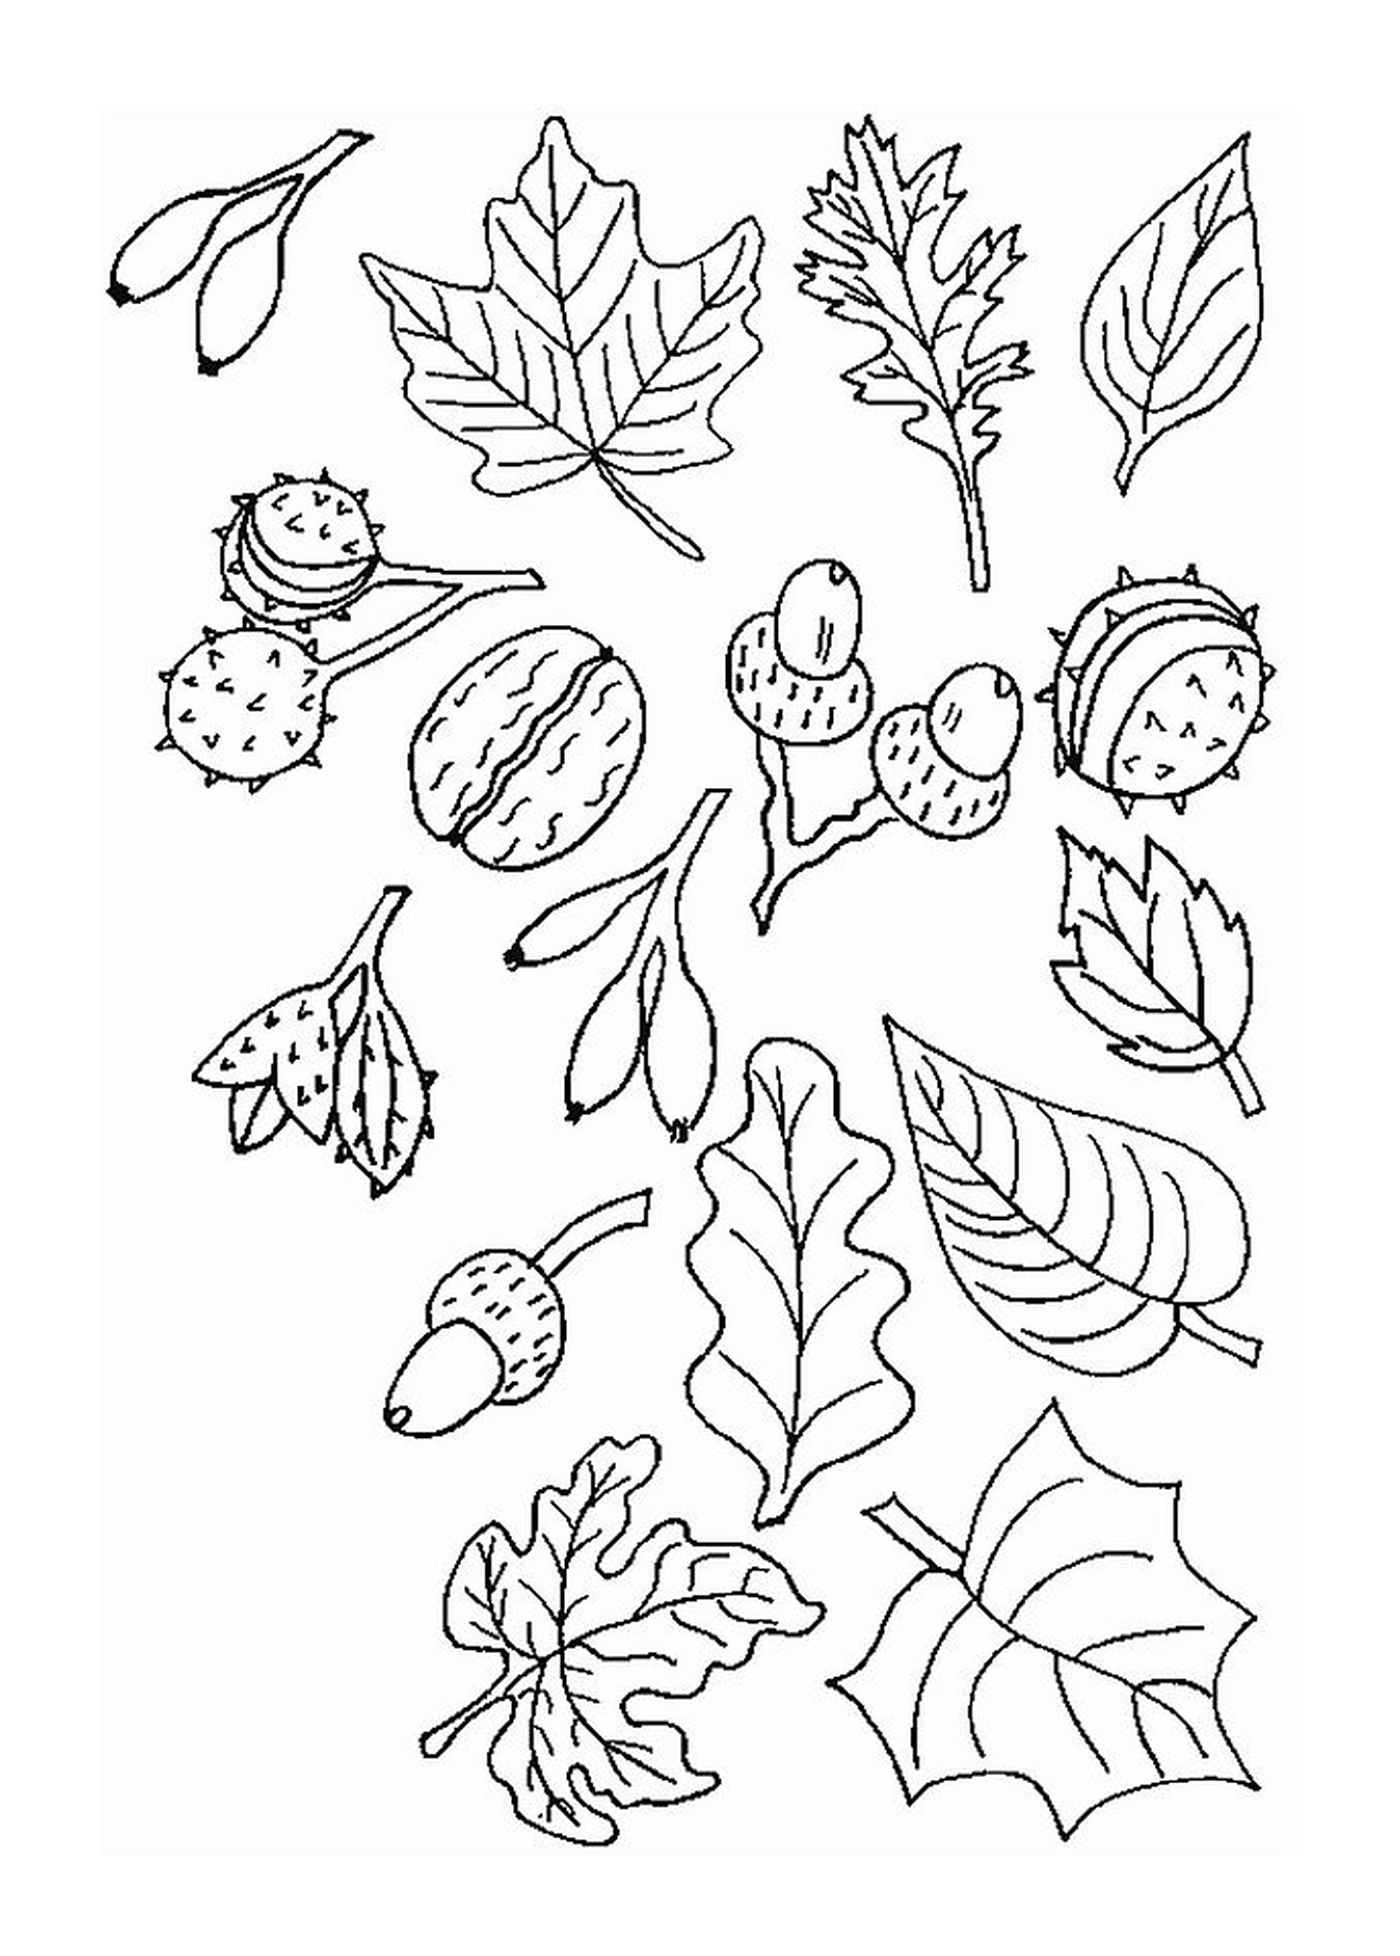  листья, орехи и желудки 